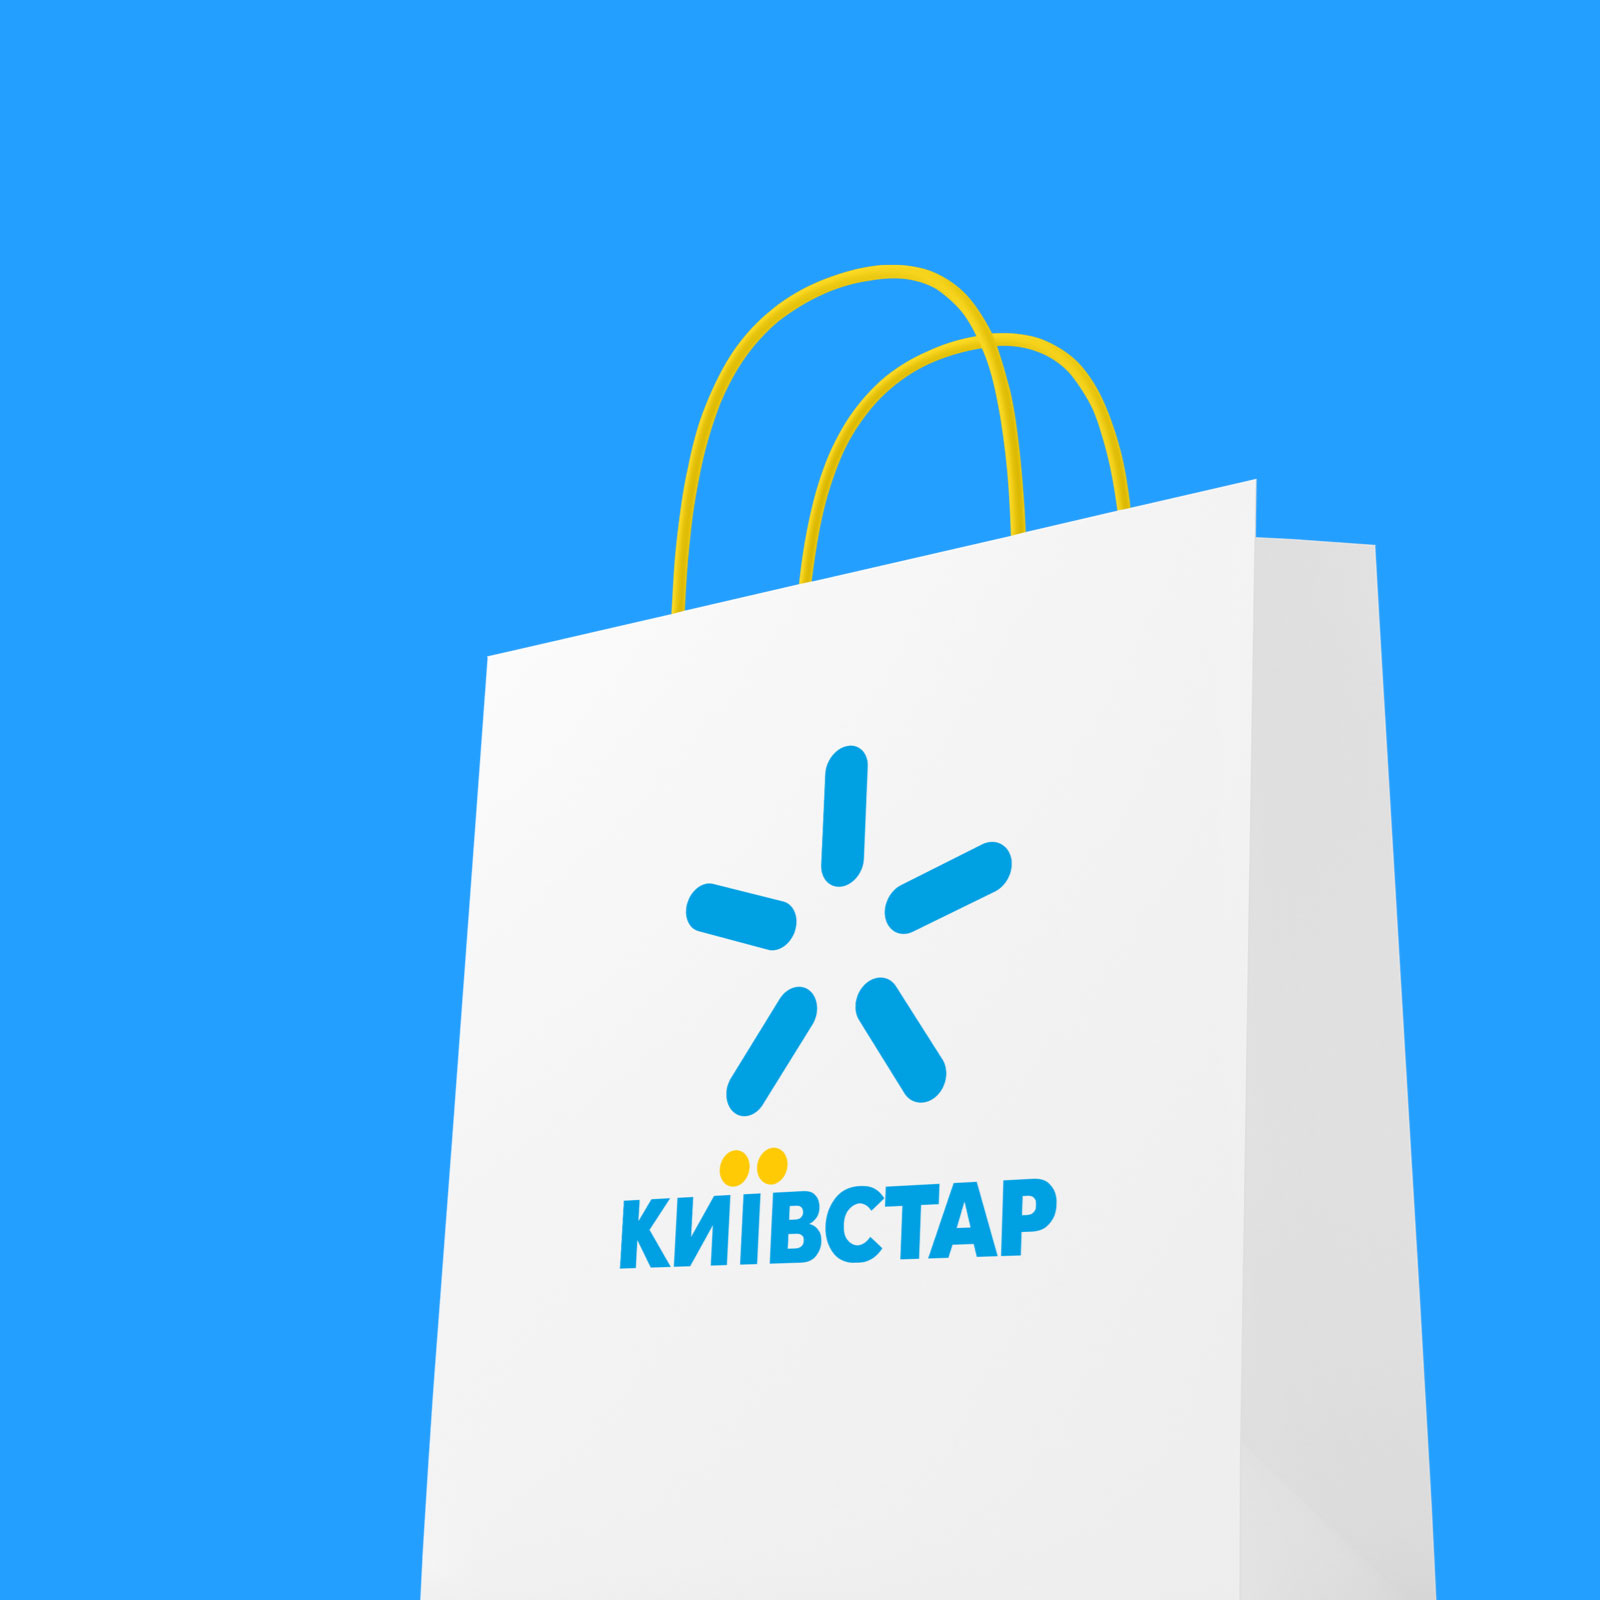 Kyivstar Shop